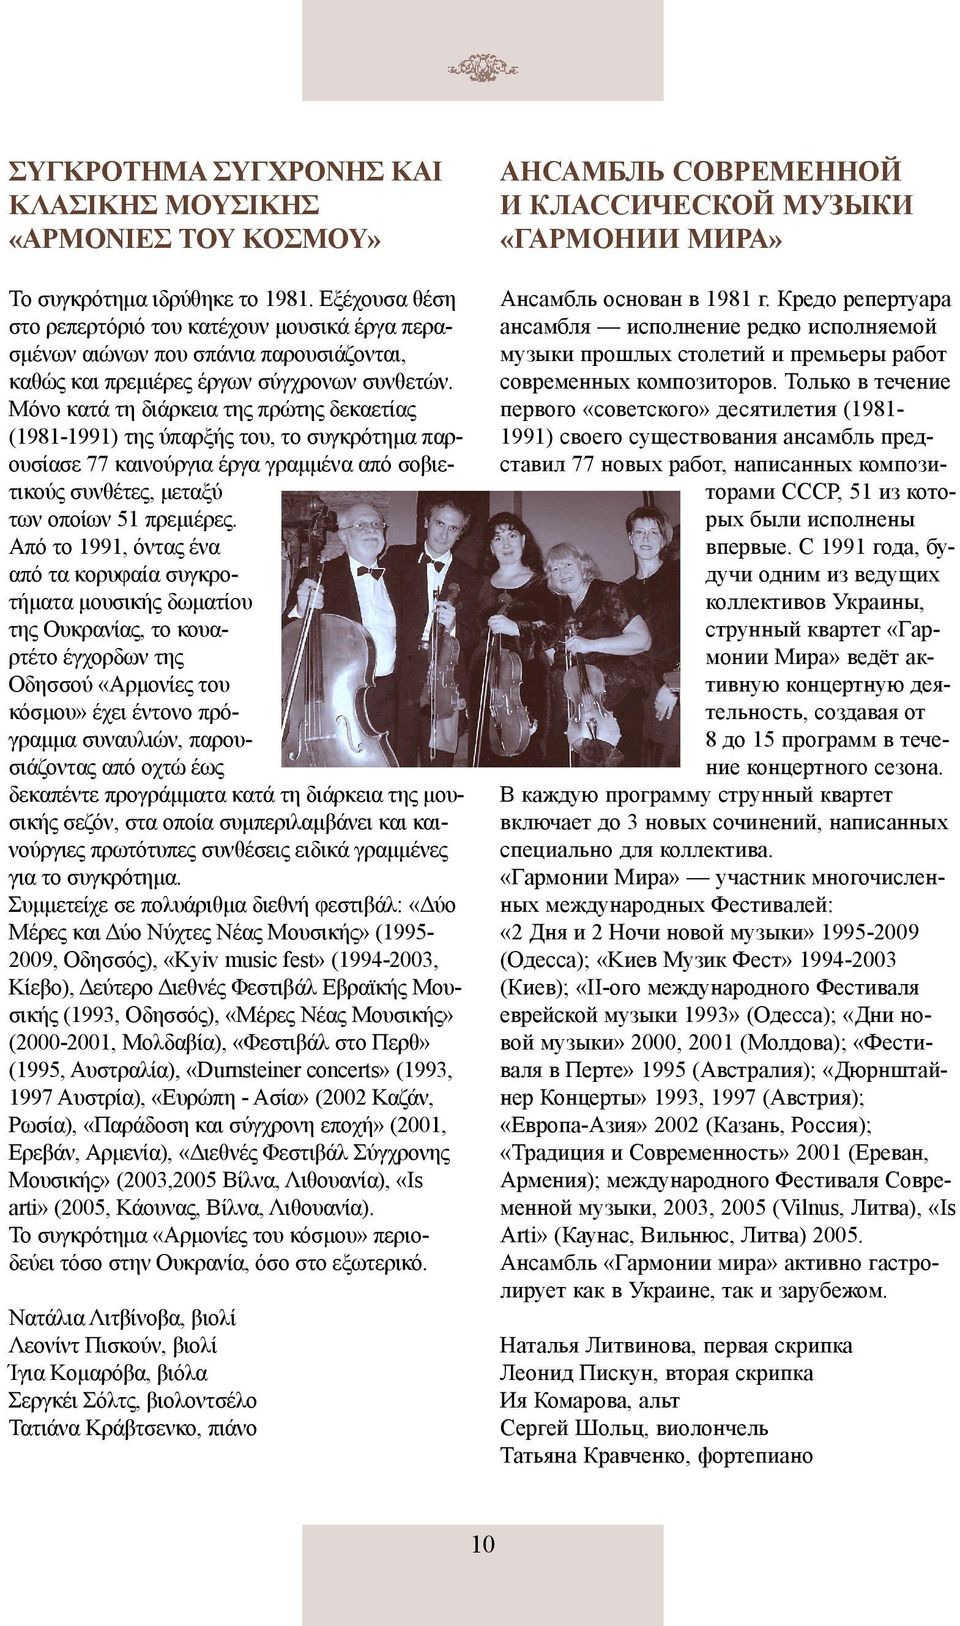 Μόνο κατά τη διάρκεια της πρώτης δεκαετίας (1981-1991) της ύπαρξής του, το συγκρότημα παρουσίασε 77 καινούργια έργα γραμμένα από σοβιετικούς συνθέτες, μεταξύ των οποίων 51 πρεμιέρες.